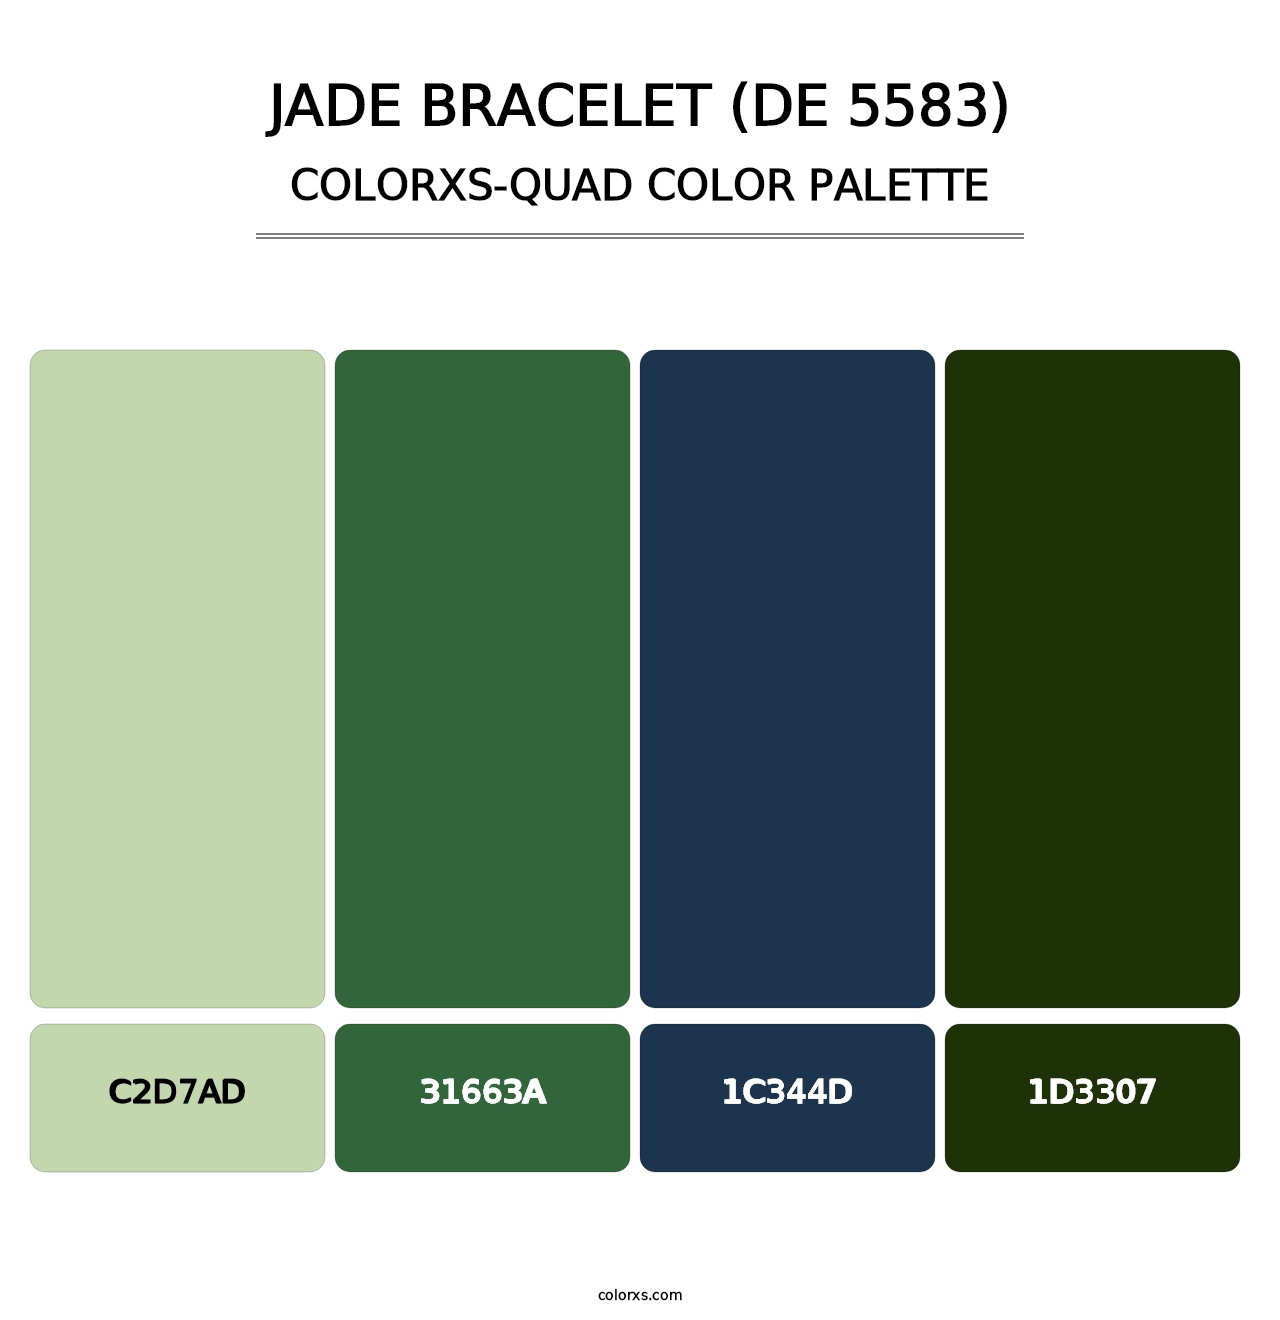 Jade Bracelet (DE 5583) - Colorxs Quad Palette